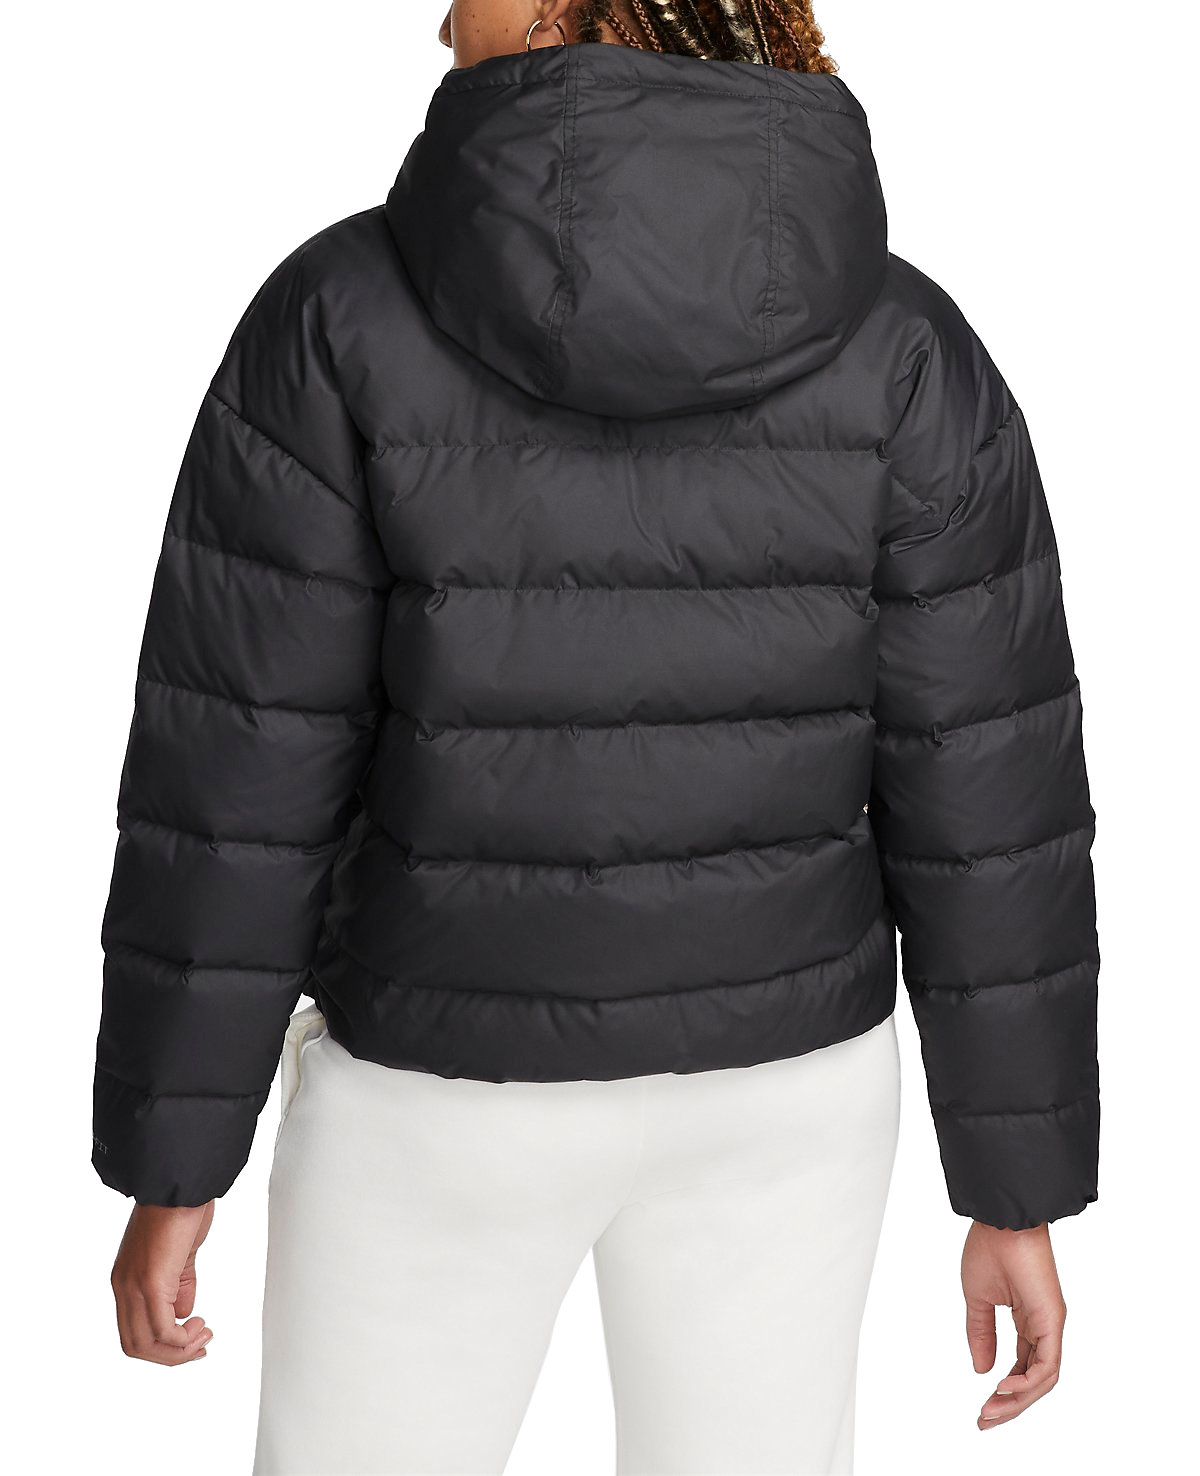 Distribución perdonado lanzamiento Hooded jacket Nike Storm-FIT Winterjacket Womens - Top4Running.com